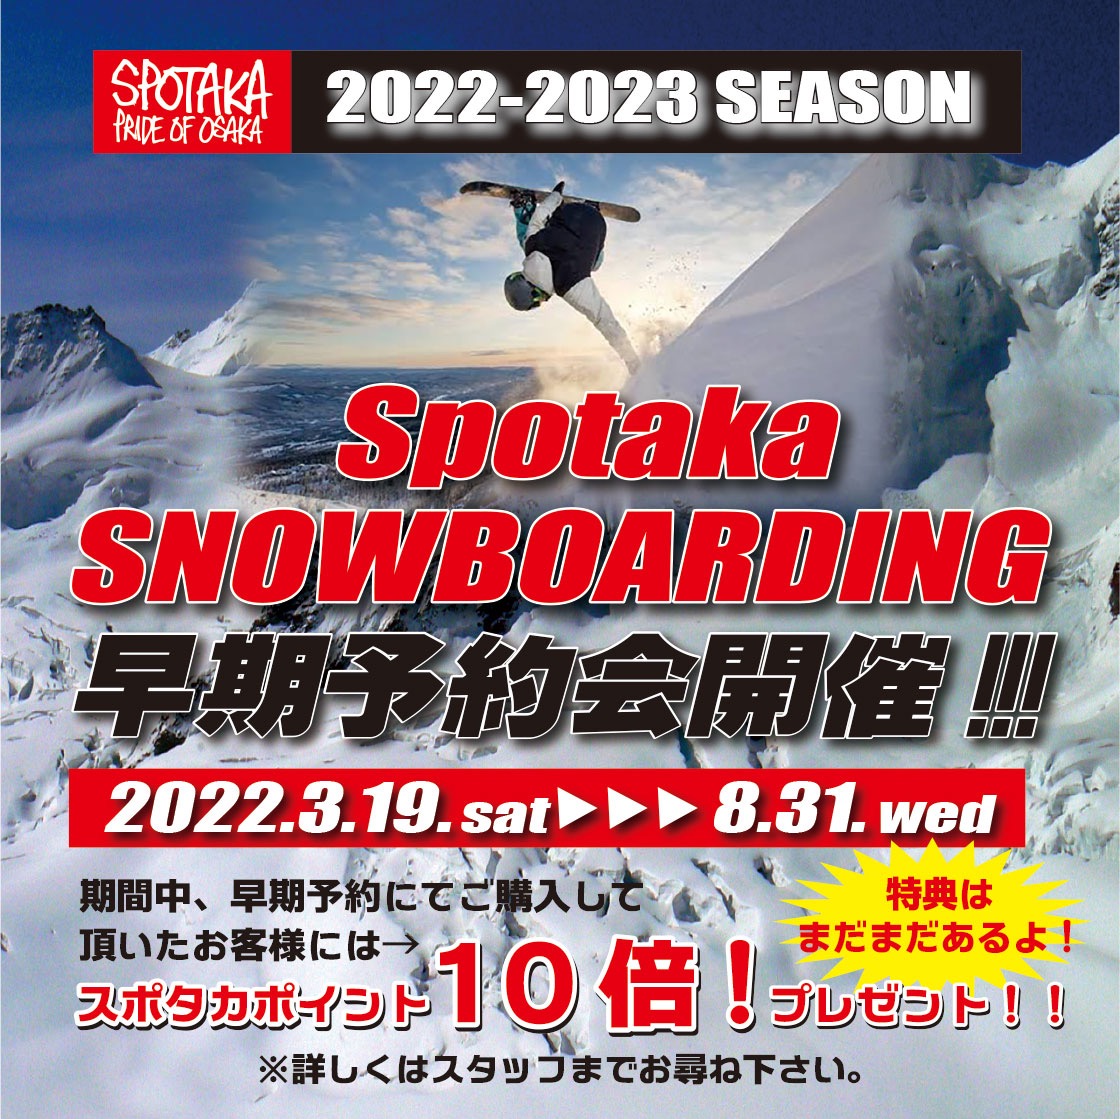 2022.3.19（sat）～開催しているスポタカスノーボーディング早期予約会！